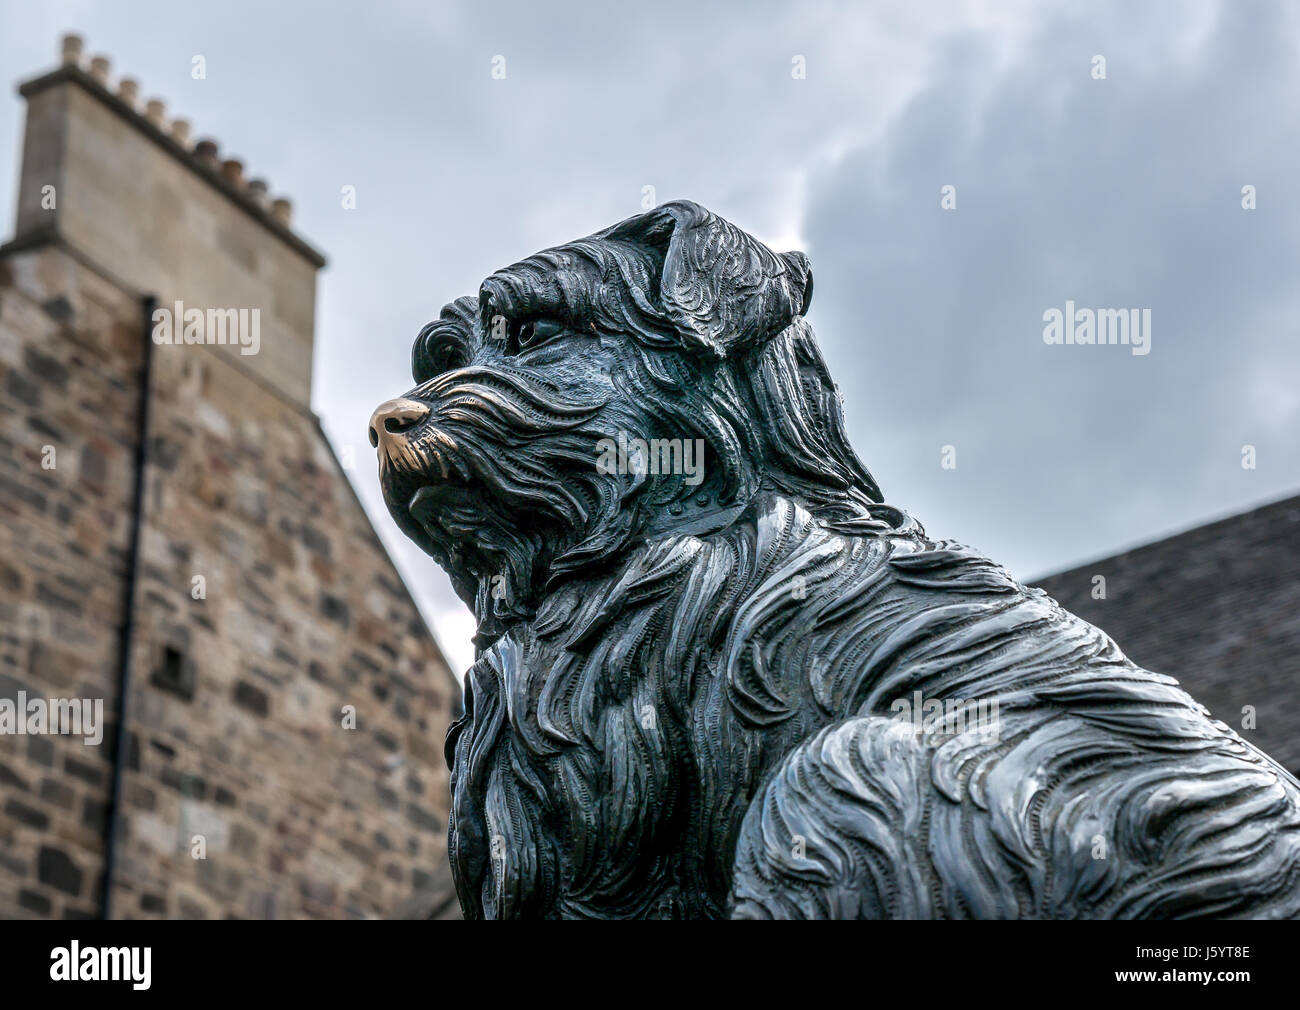 Cerca de perro de Grayfriar Bobby estatua en bronce por William Brodie y antiguo edificio casón, Edimburgo, Escocia, Reino Unido, con buena suerte frota la nariz brillante Foto de stock